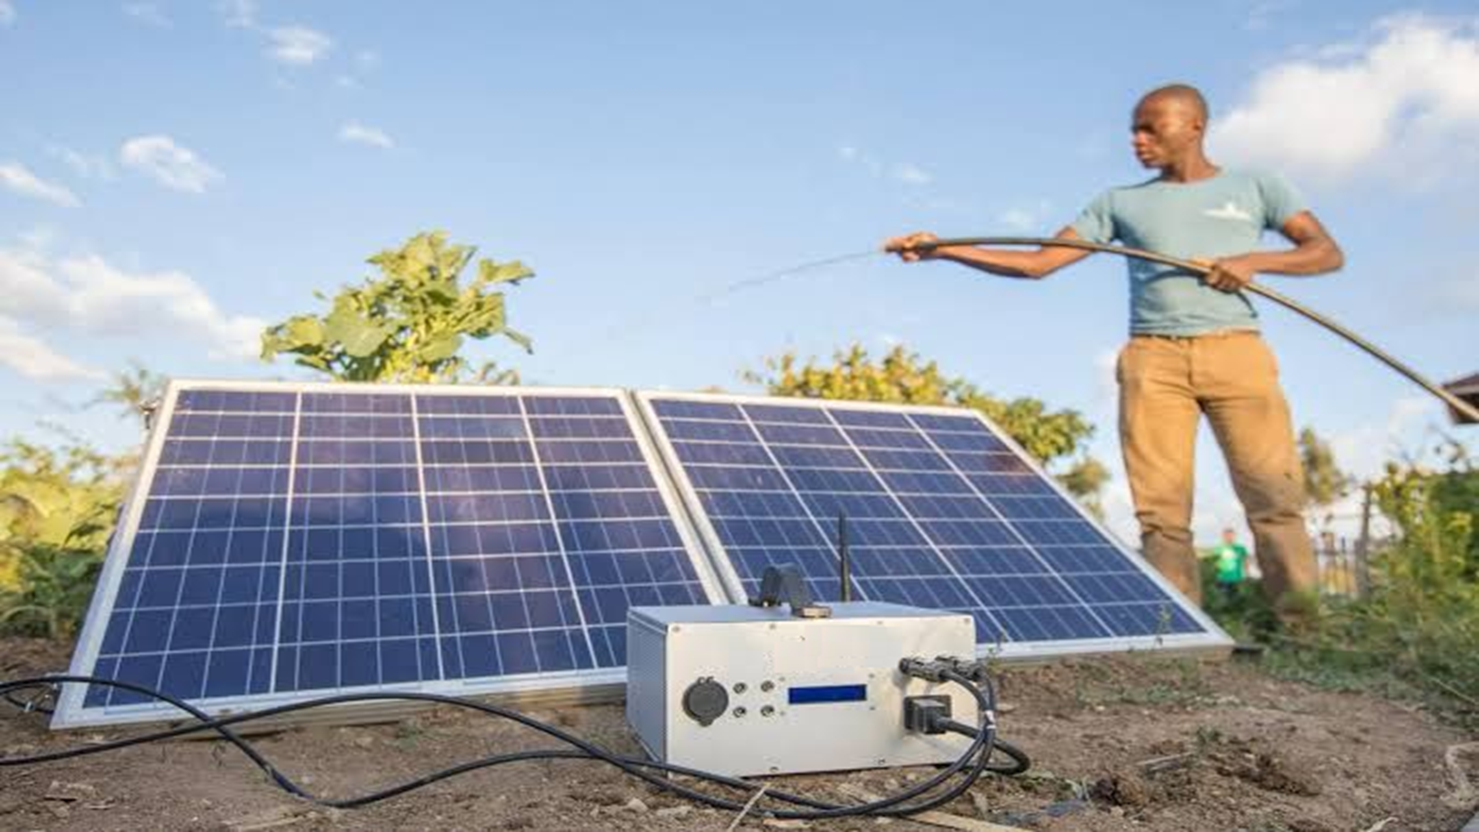 Applicazione del sistema di accumulo dell'energia solare nell'irrigazione agricola in Africa